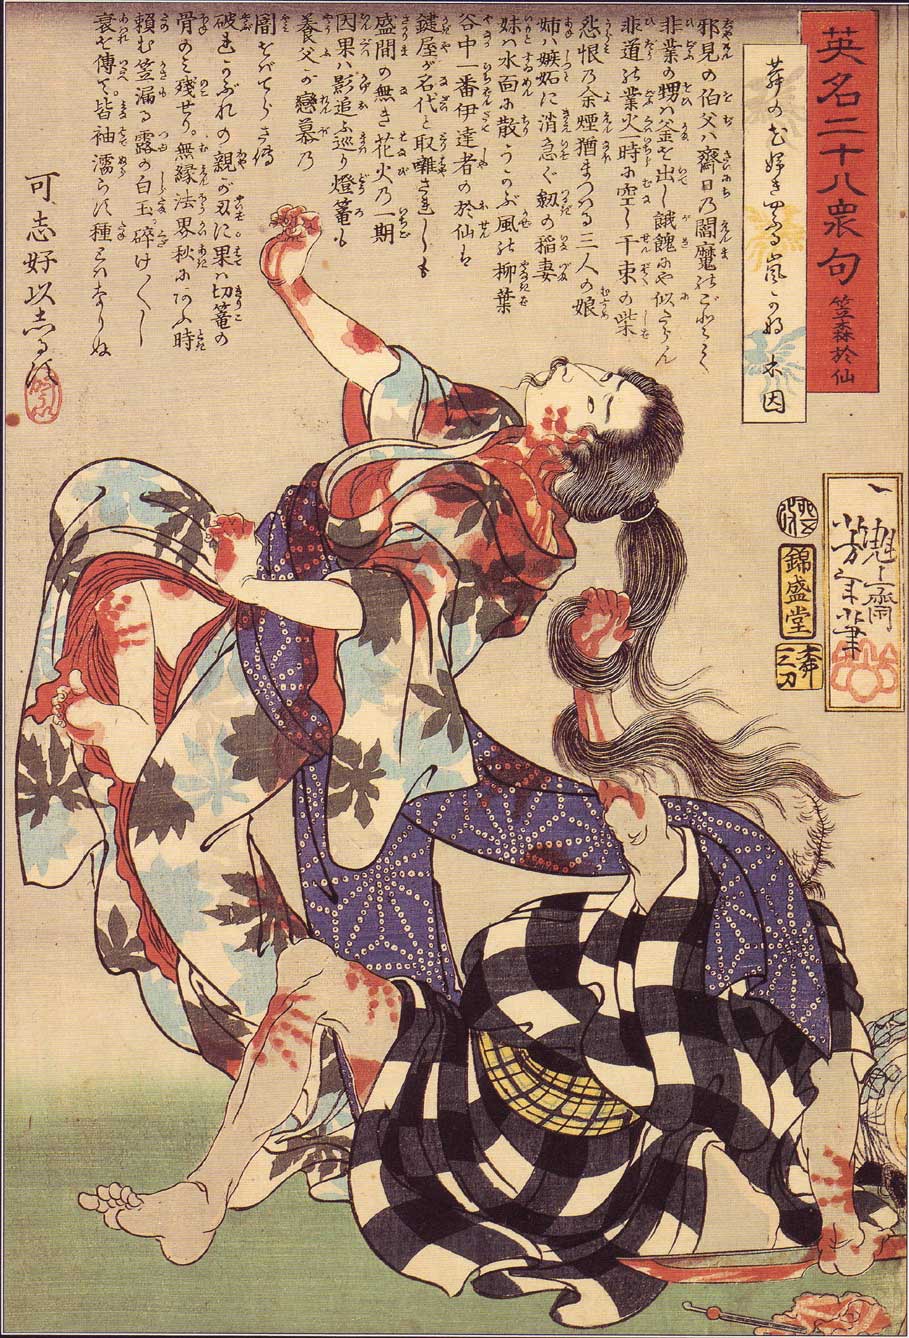 Tsukioka Yoshitoshi, 28 famous murders, The murder of Kasamori Osen 14